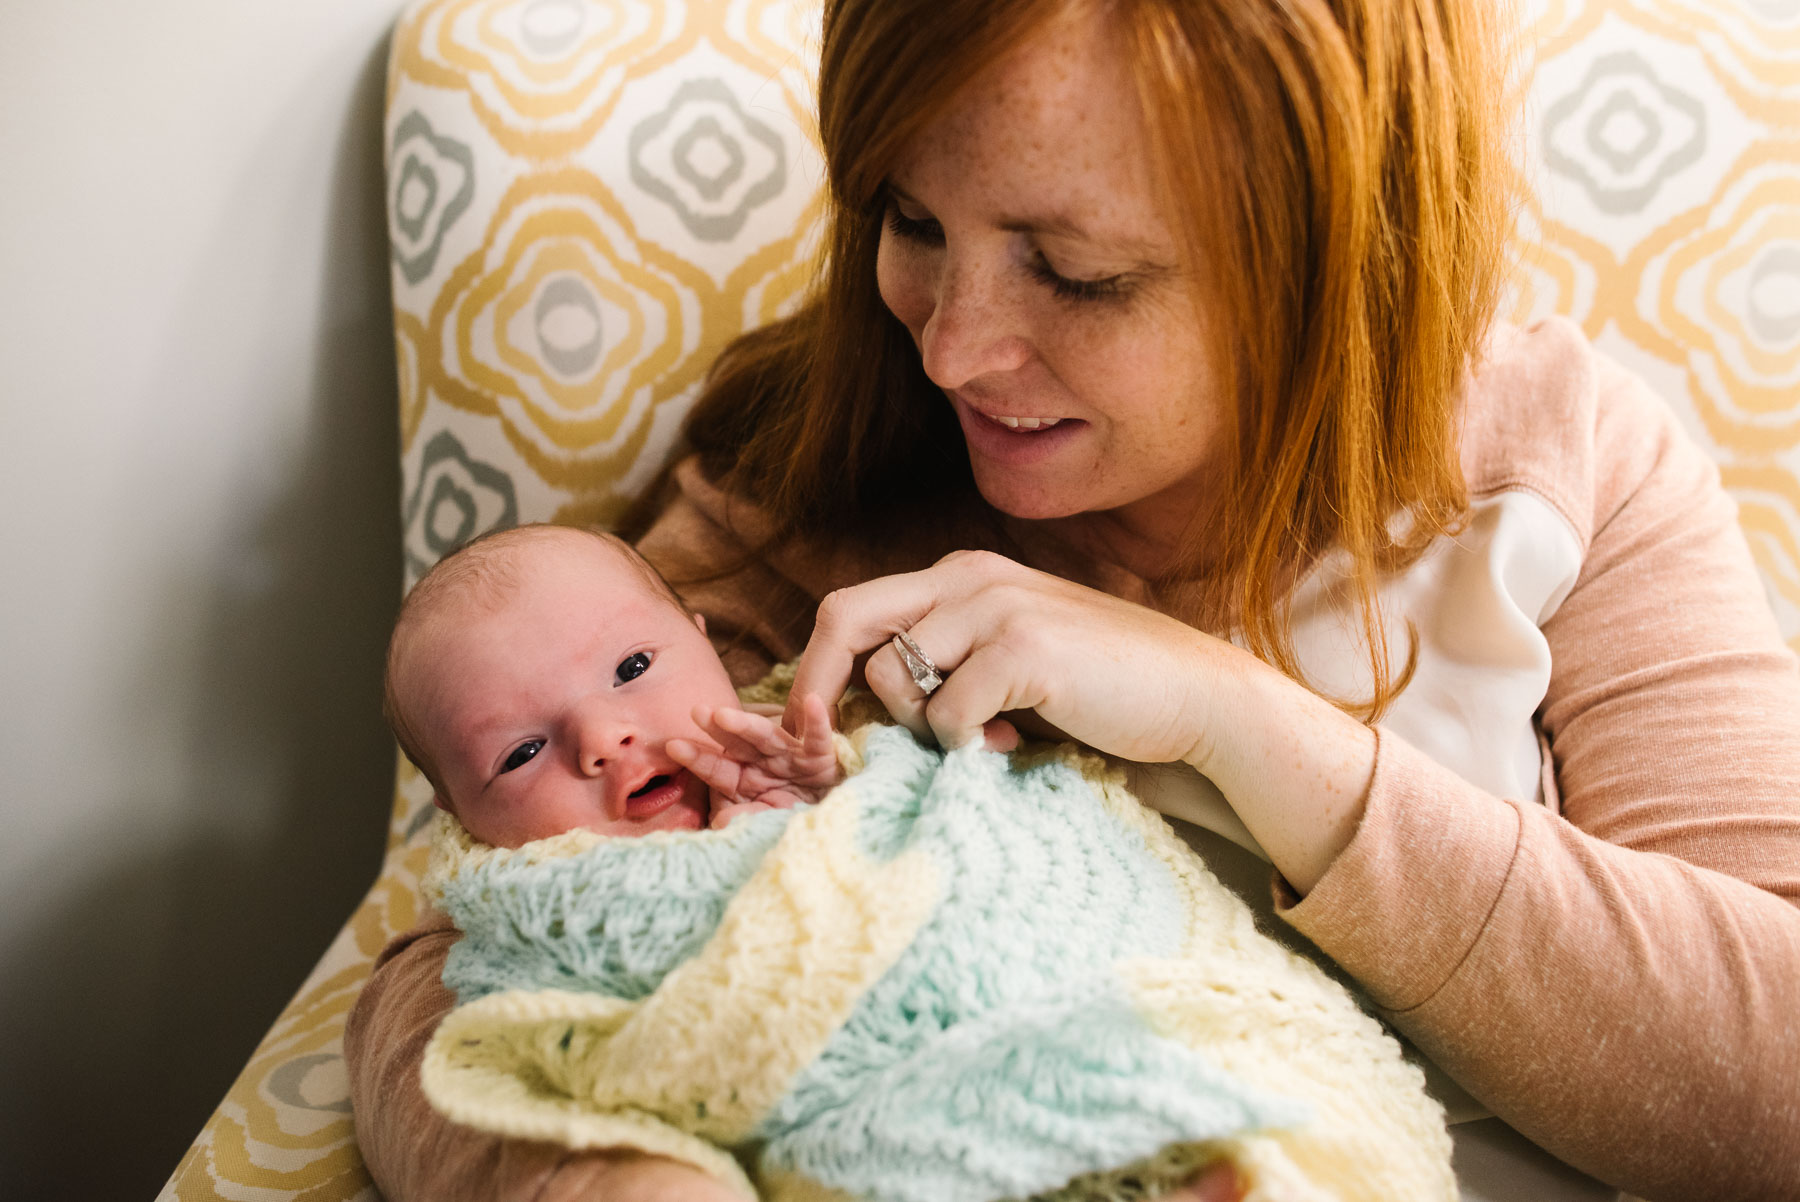 mom interacting with awake newborn baby girl